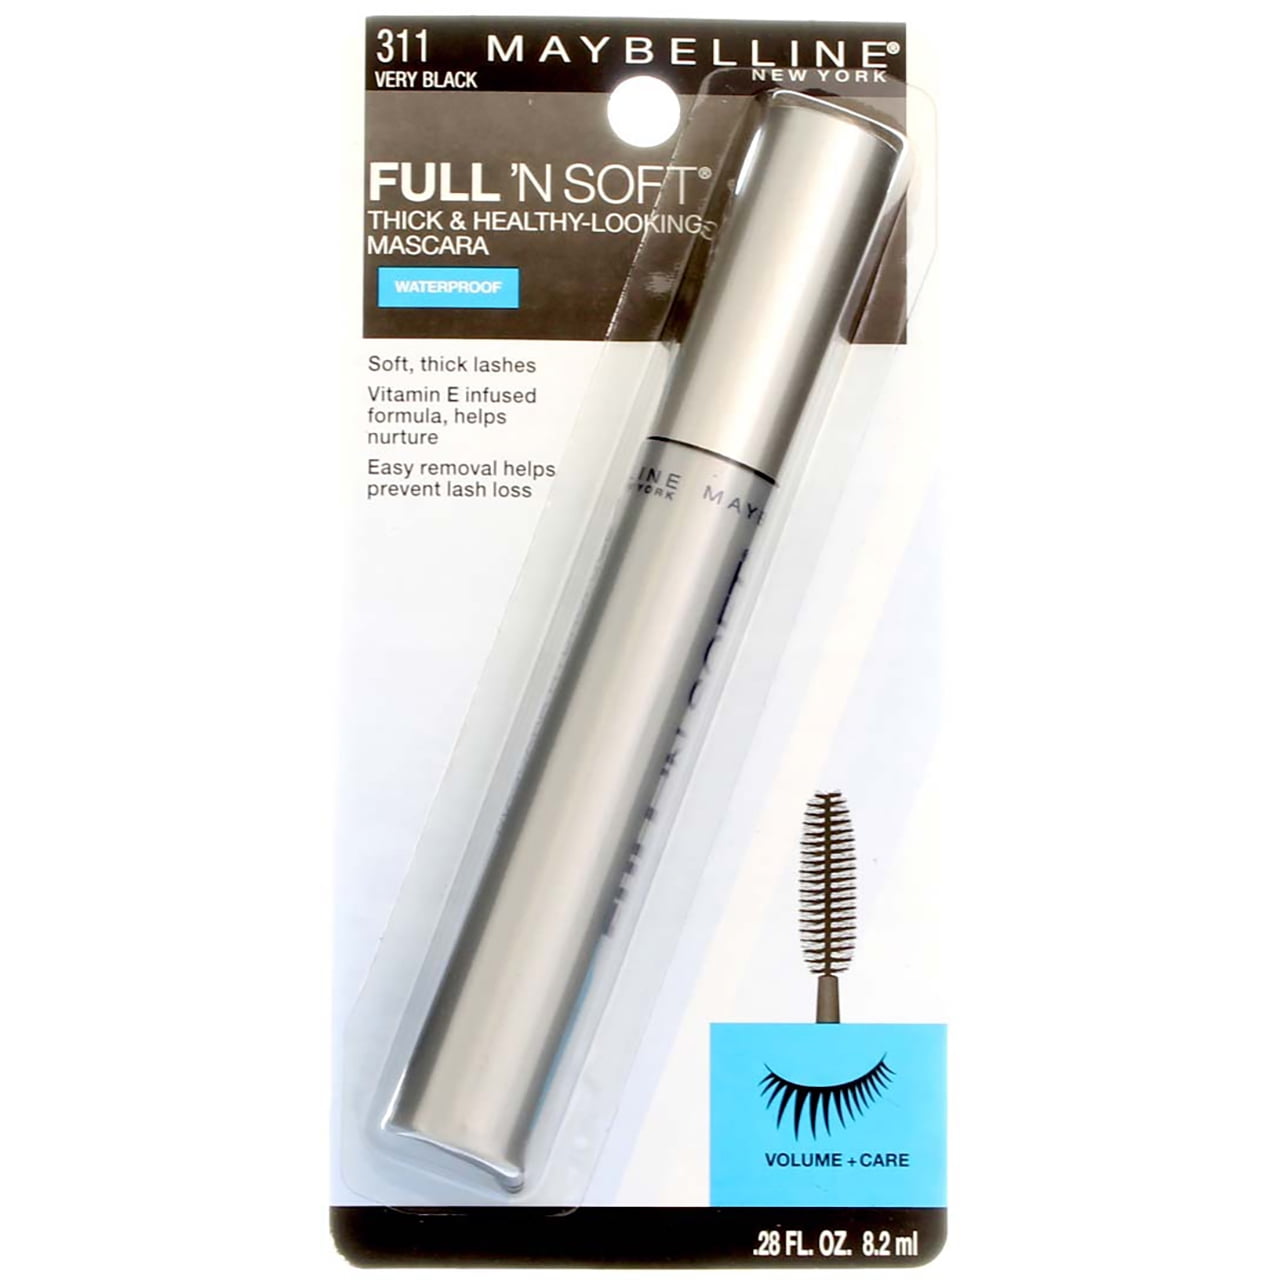 Maybelline Full 'N Soft Waterproof Mascara, Very Black [311], 0.28 oz ...